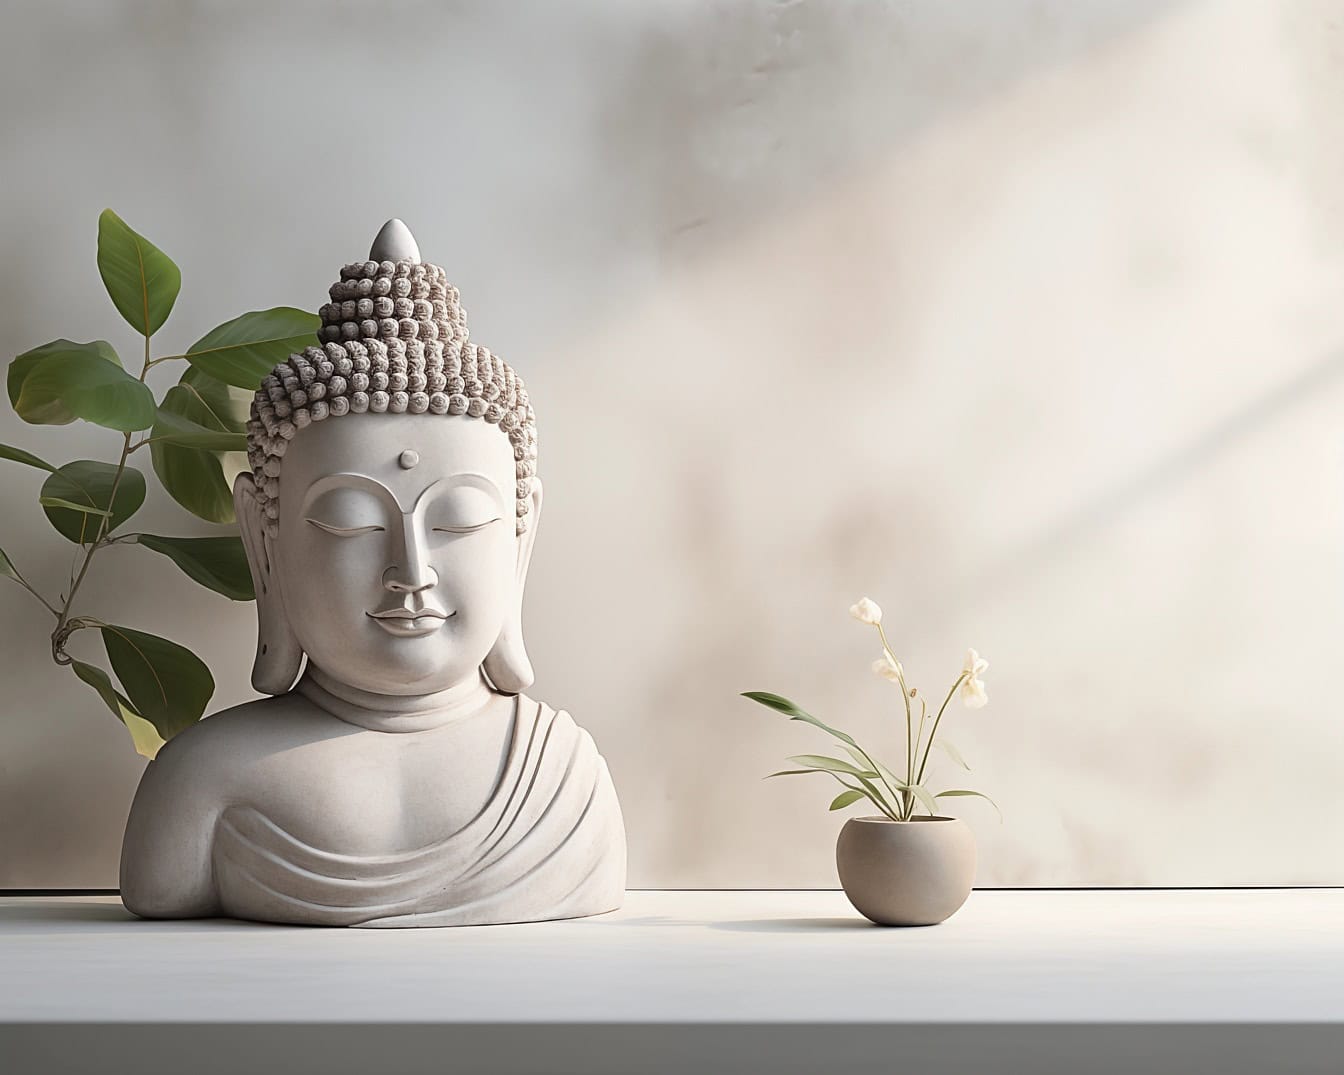 Buddhan pään ja vartalon valkoinen patsas valkoisen kukan vieressä, joka kuvaa minimalistista muotoilua ja rauhallista meditaatiota